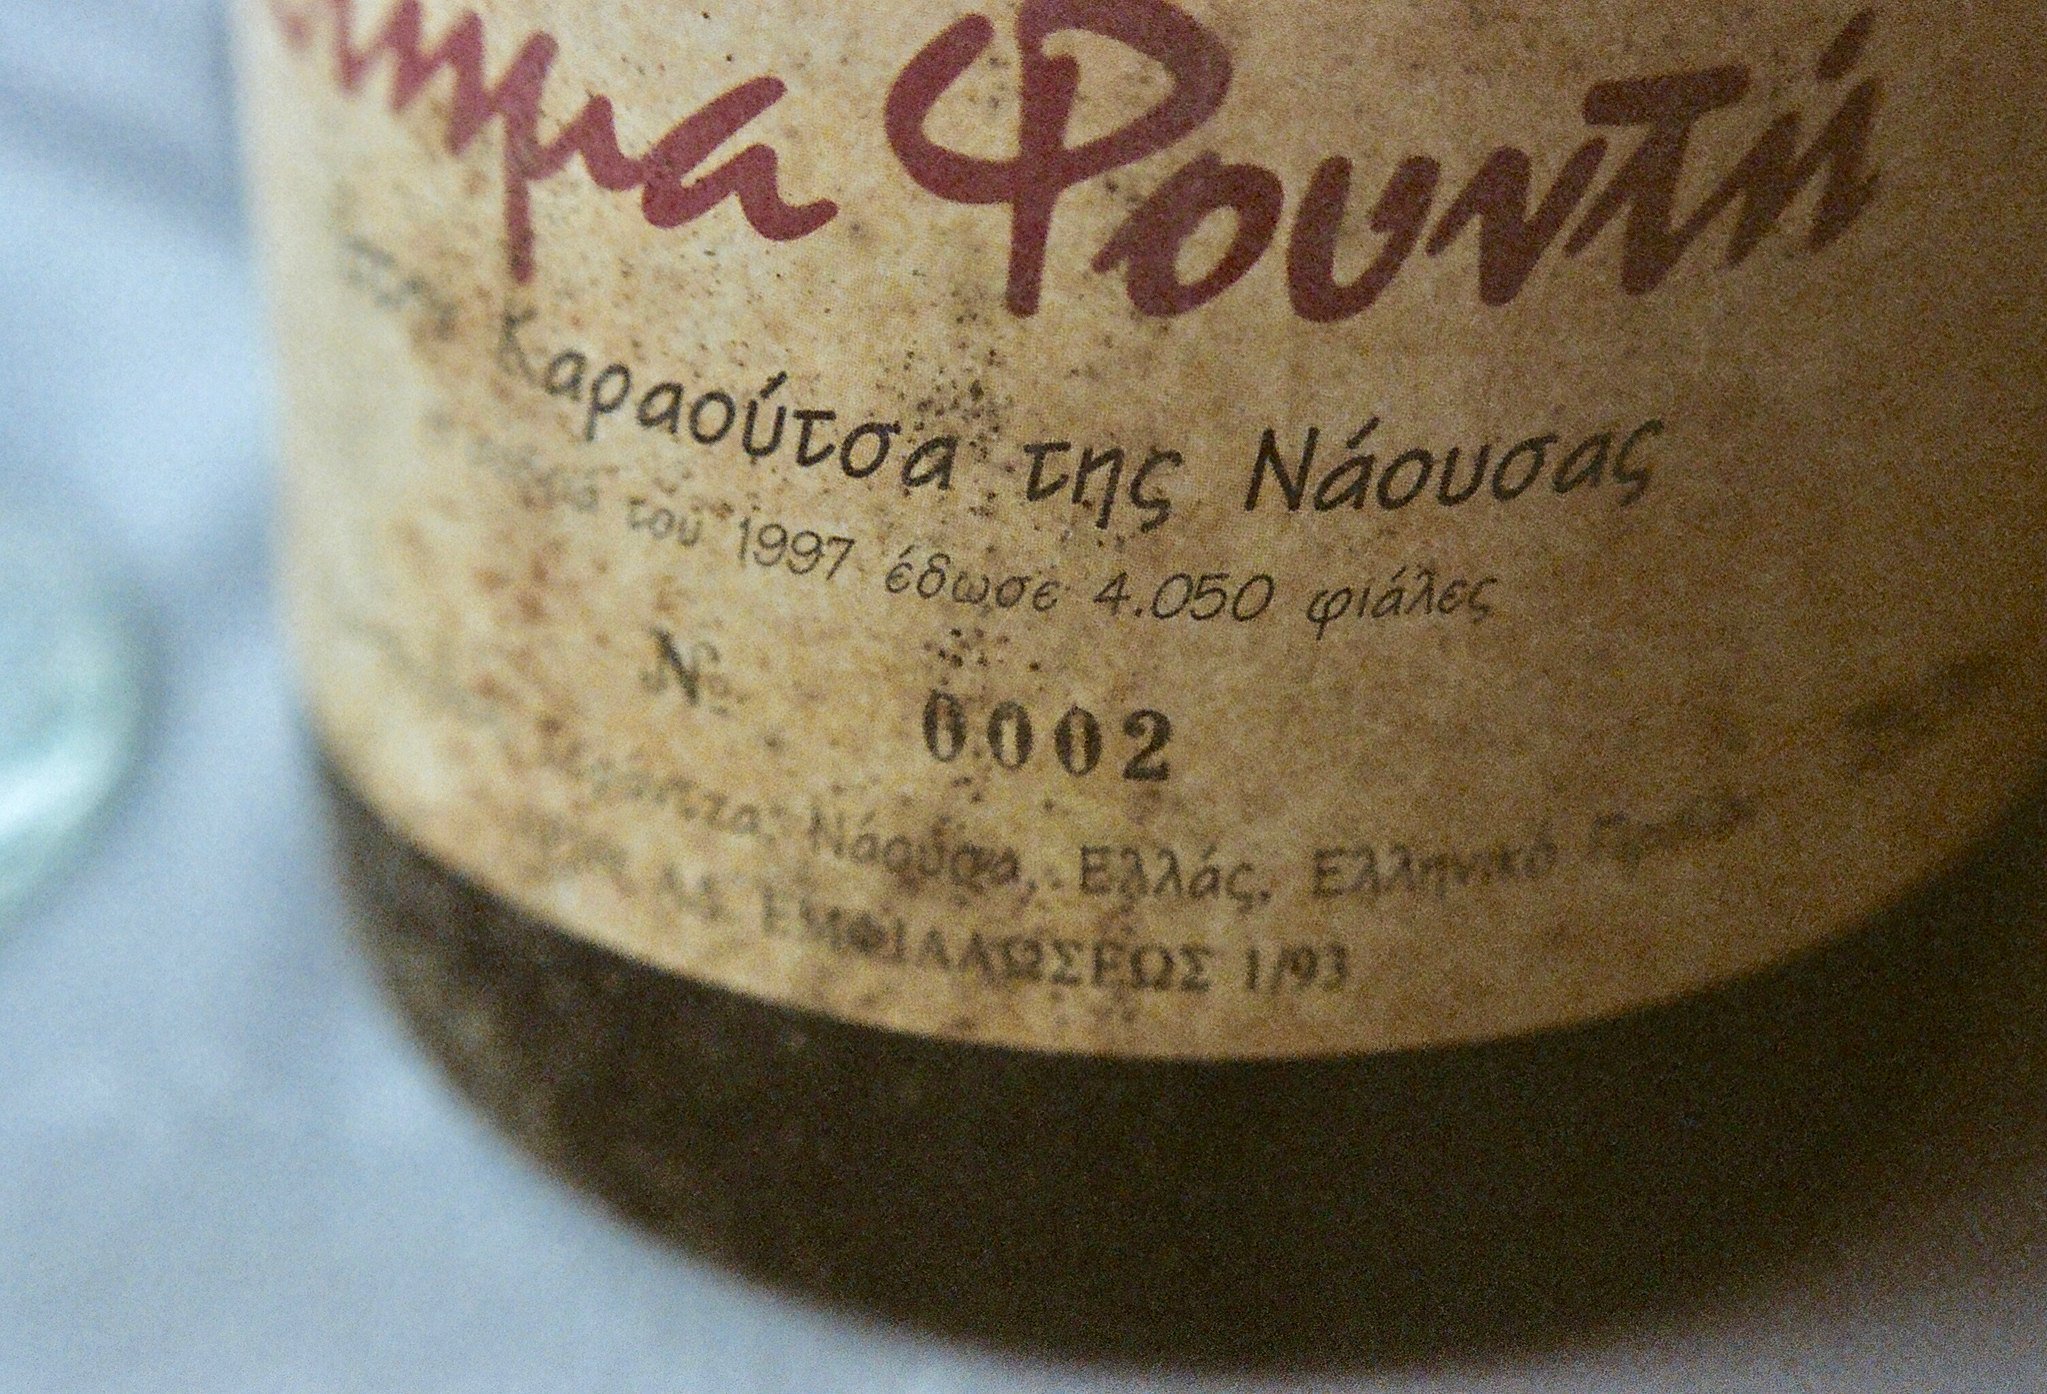 Naousa wine. 